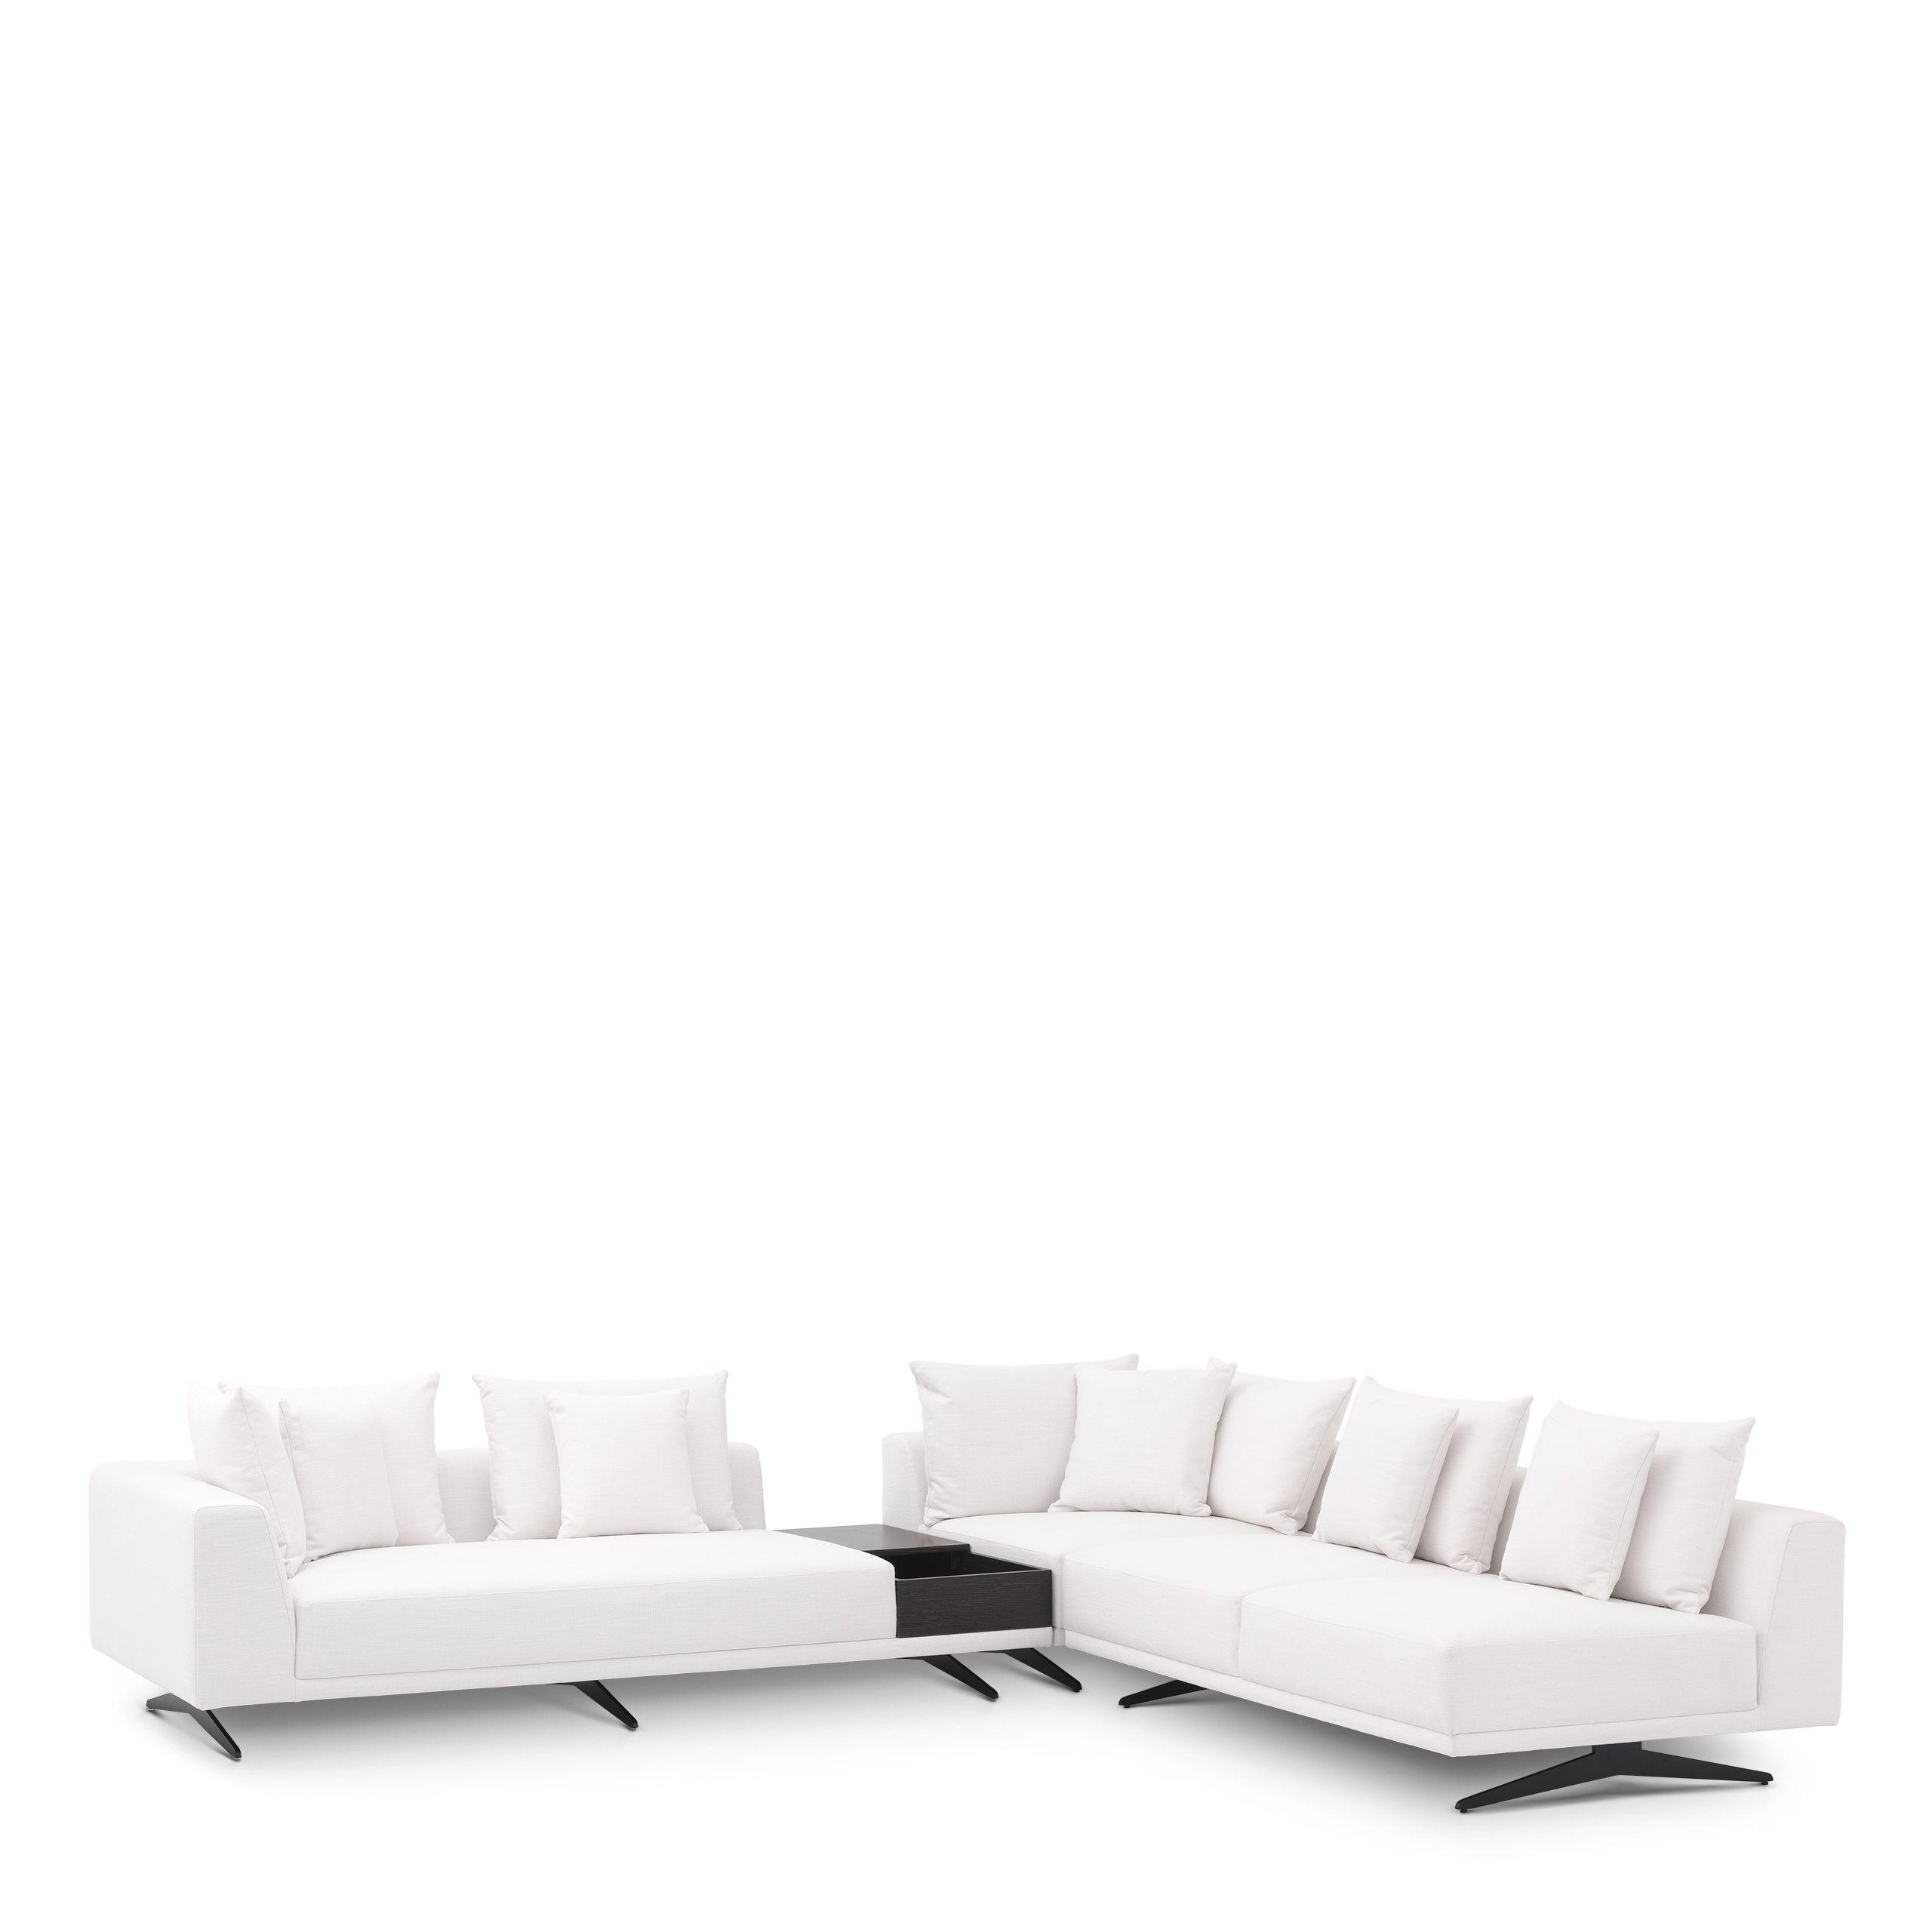 Купить Угловой диван Sofa Endless в интернет-магазине roooms.ru